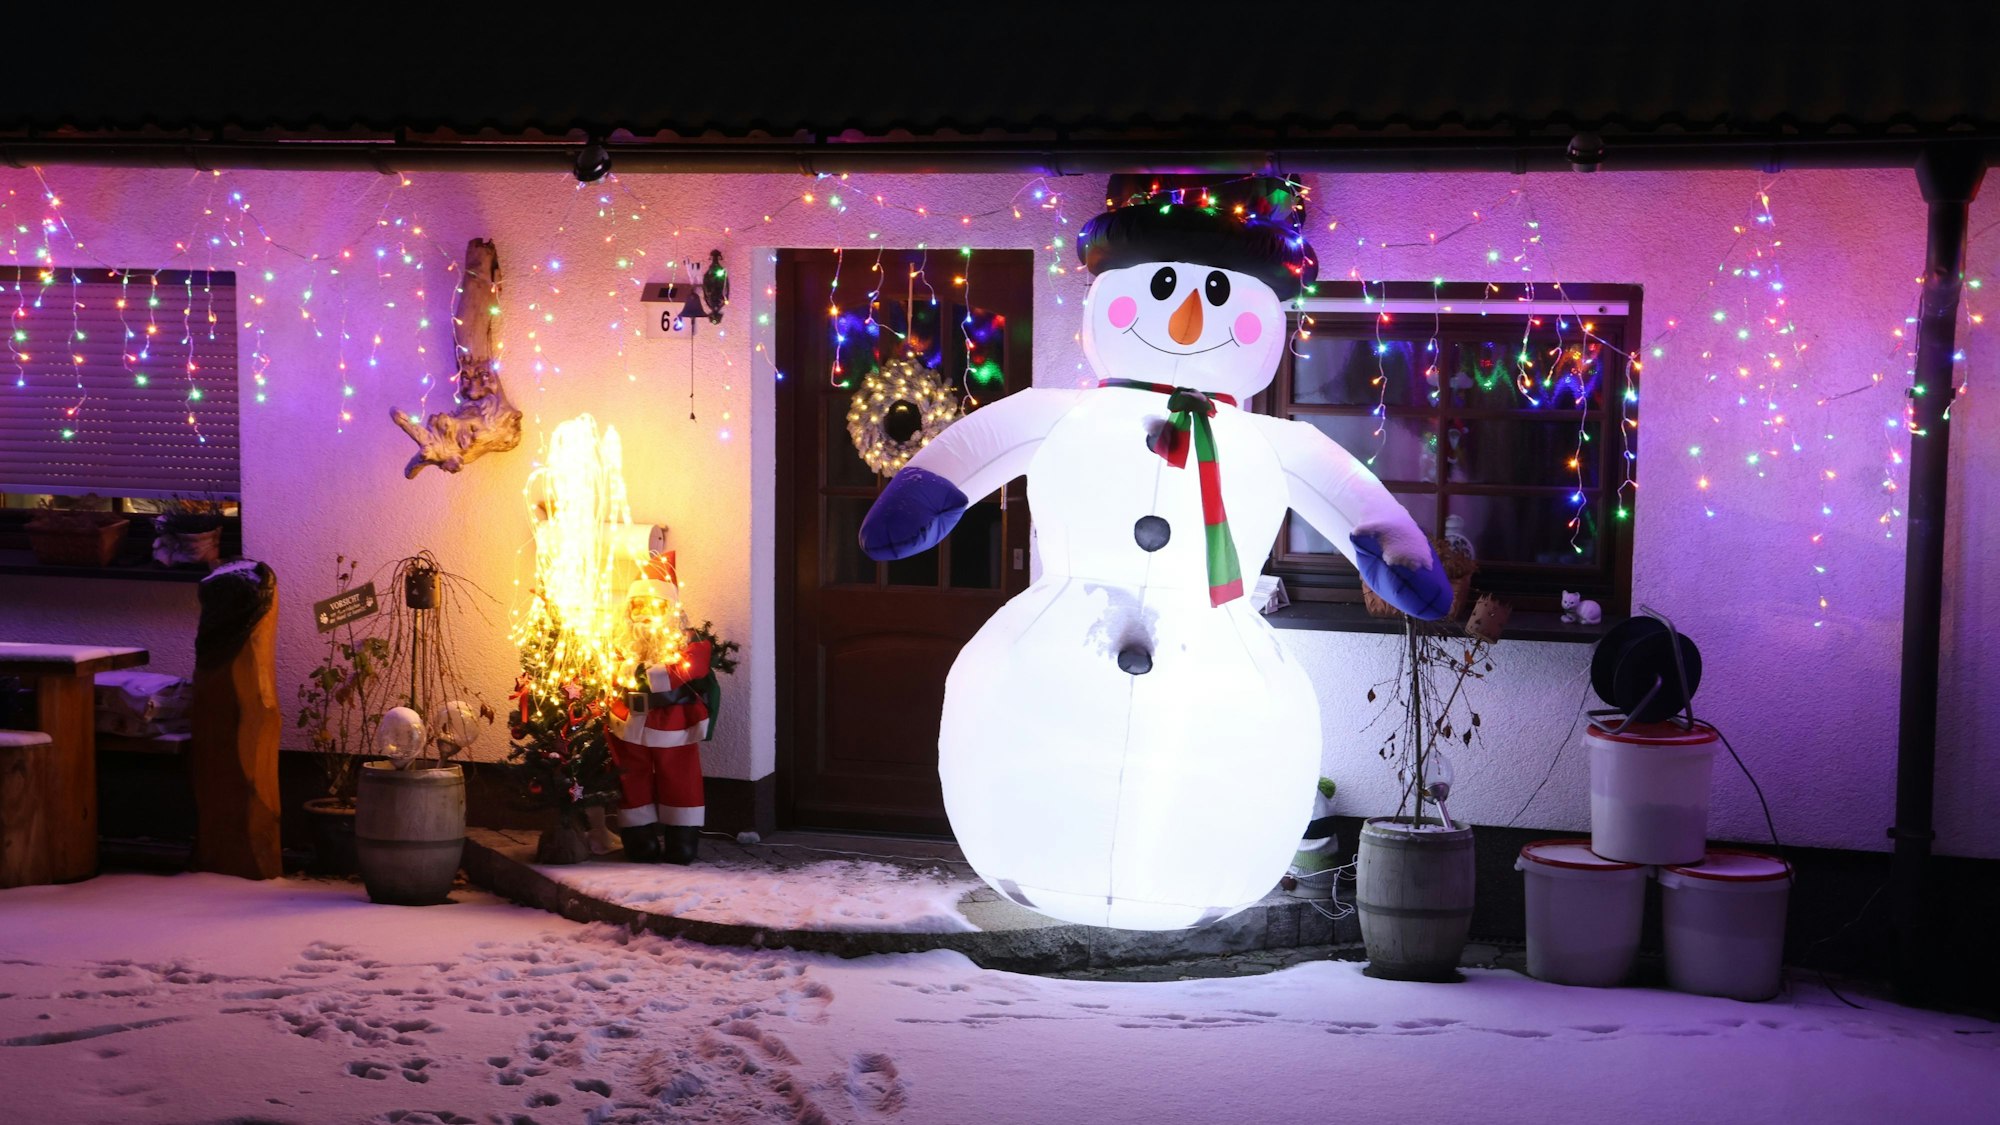 Ein großer aufblasbarer Schneemann steht vor einer Haustüre. Im Hintergrund hängen bunte Lichterketten an der Dachrinne des Hauses.